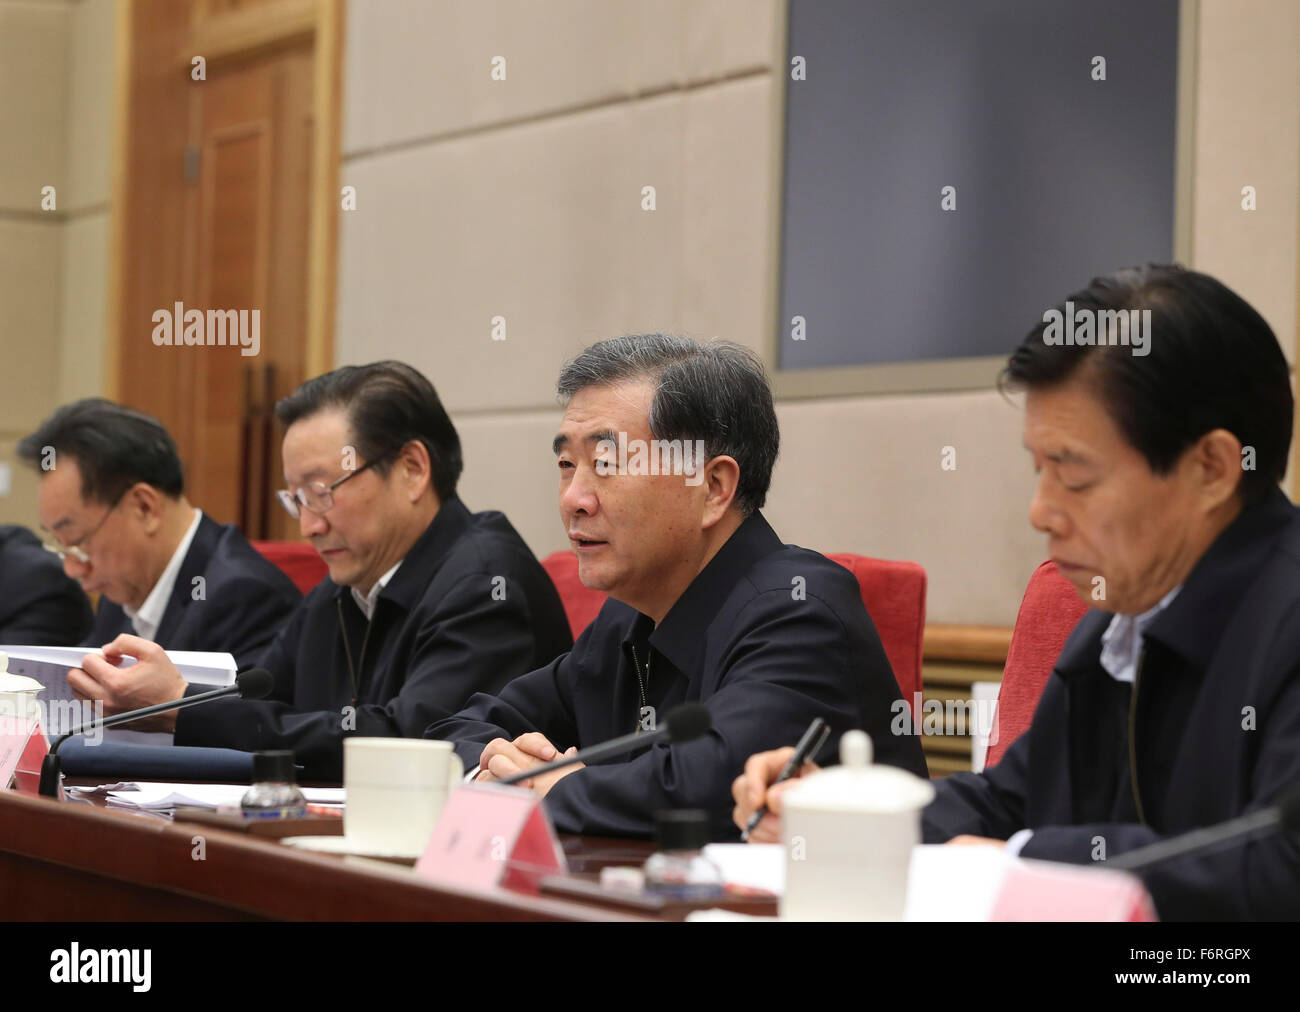 (151119)--Peking, 19. November 2015 (Xinhua)--chinesische Vize Premier Wang Yang (2. R) führt den Vorsitz in einer Besprechung über die Niederschlagung von Verletzung von Rechten des geistigen Eigentums und gefälschte Produkte in Peking, Hauptstadt von China, 19. November 2015.  (Xinhua/Ding Lin) (Zhs) Stockfoto